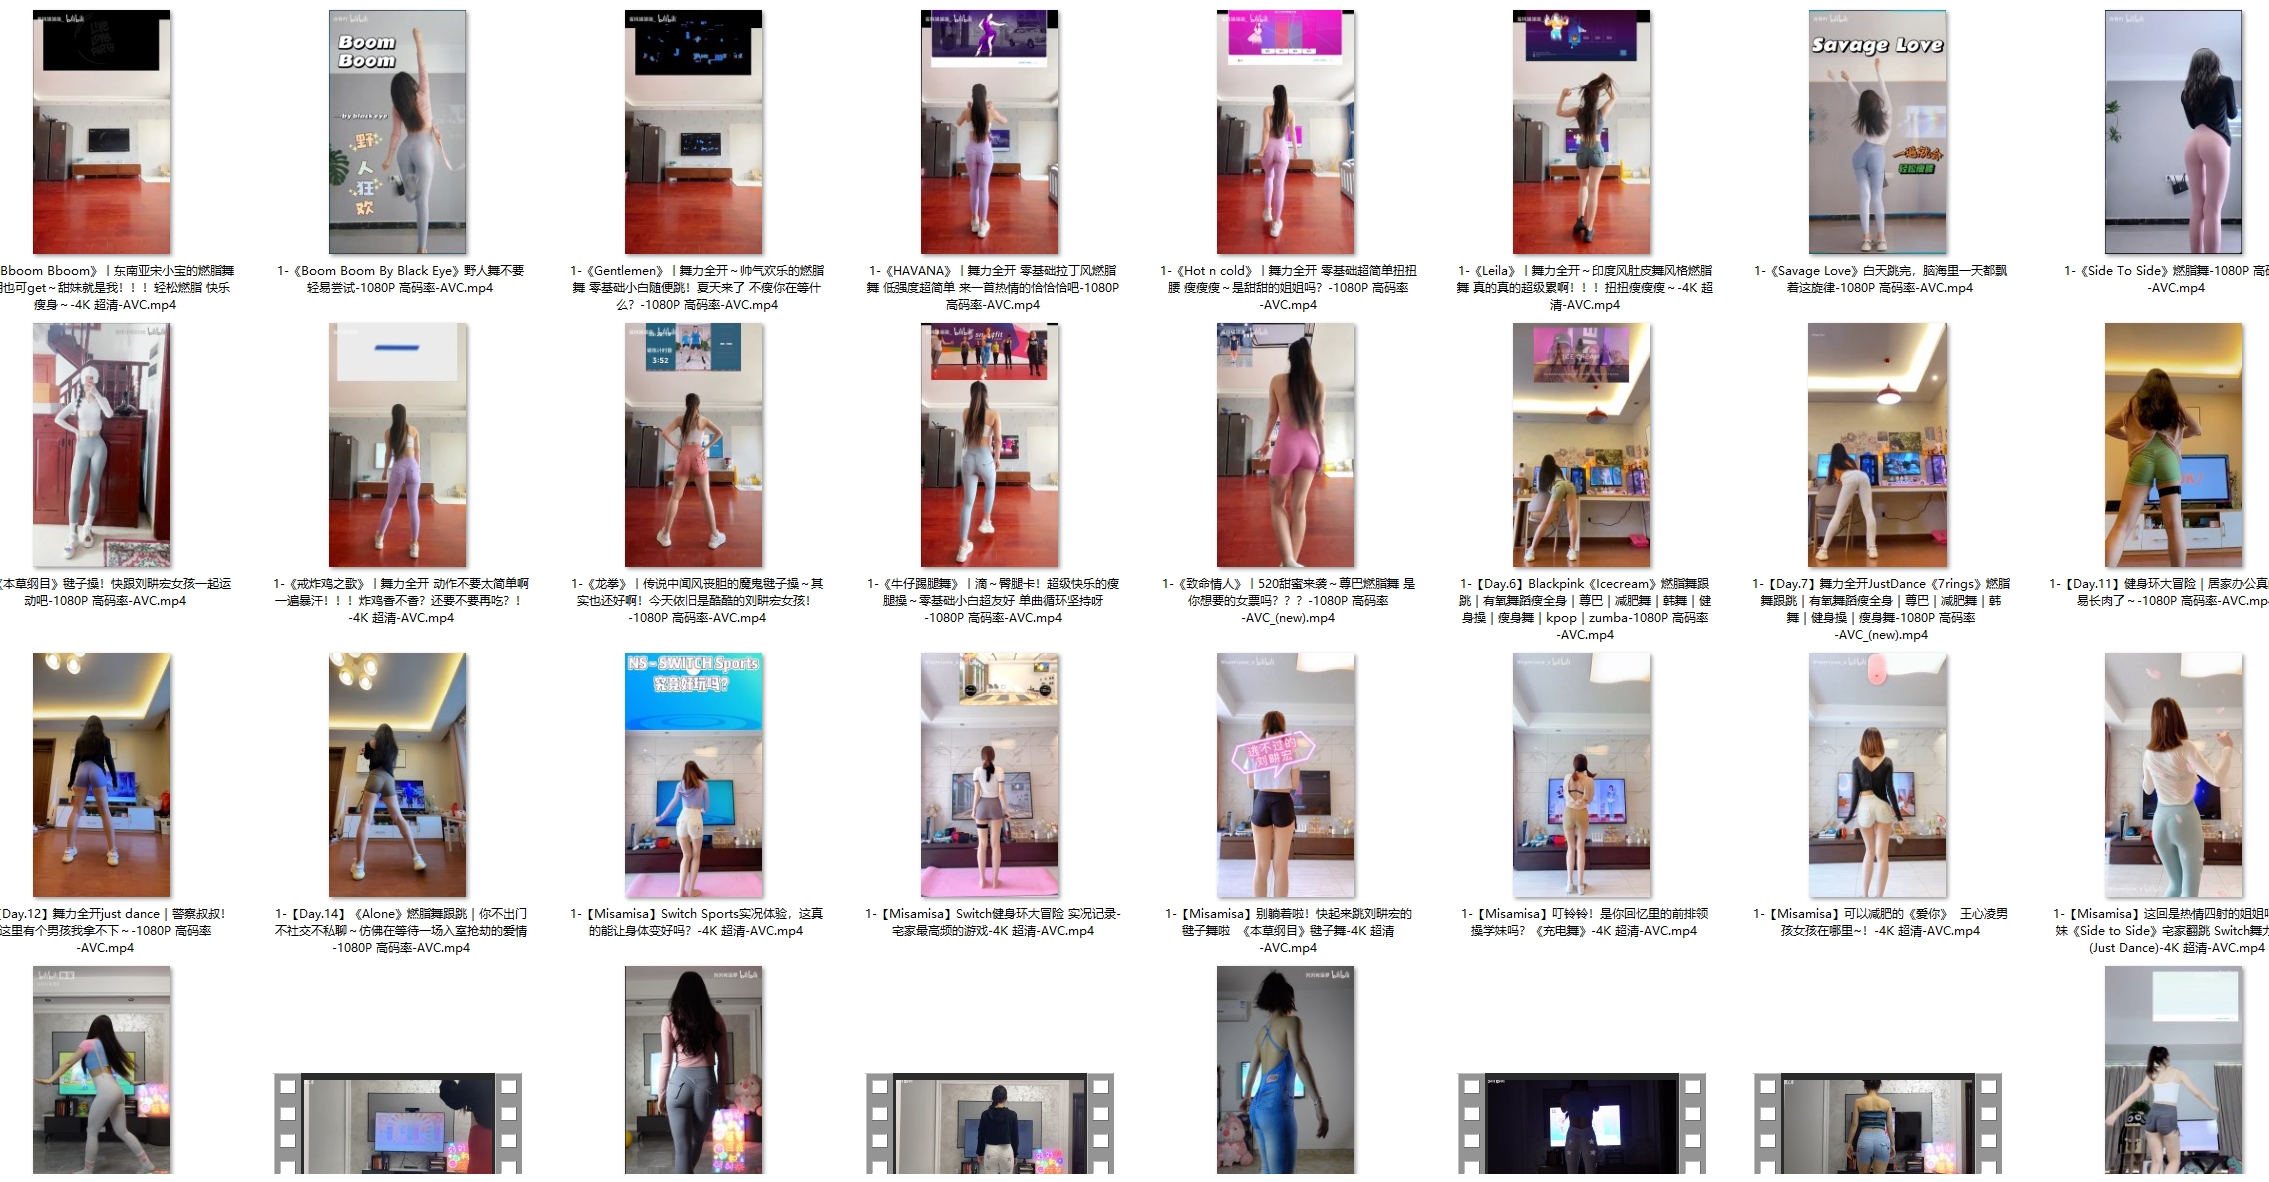 B站的瑜伽健身妹子合集 [23G]-预览图片